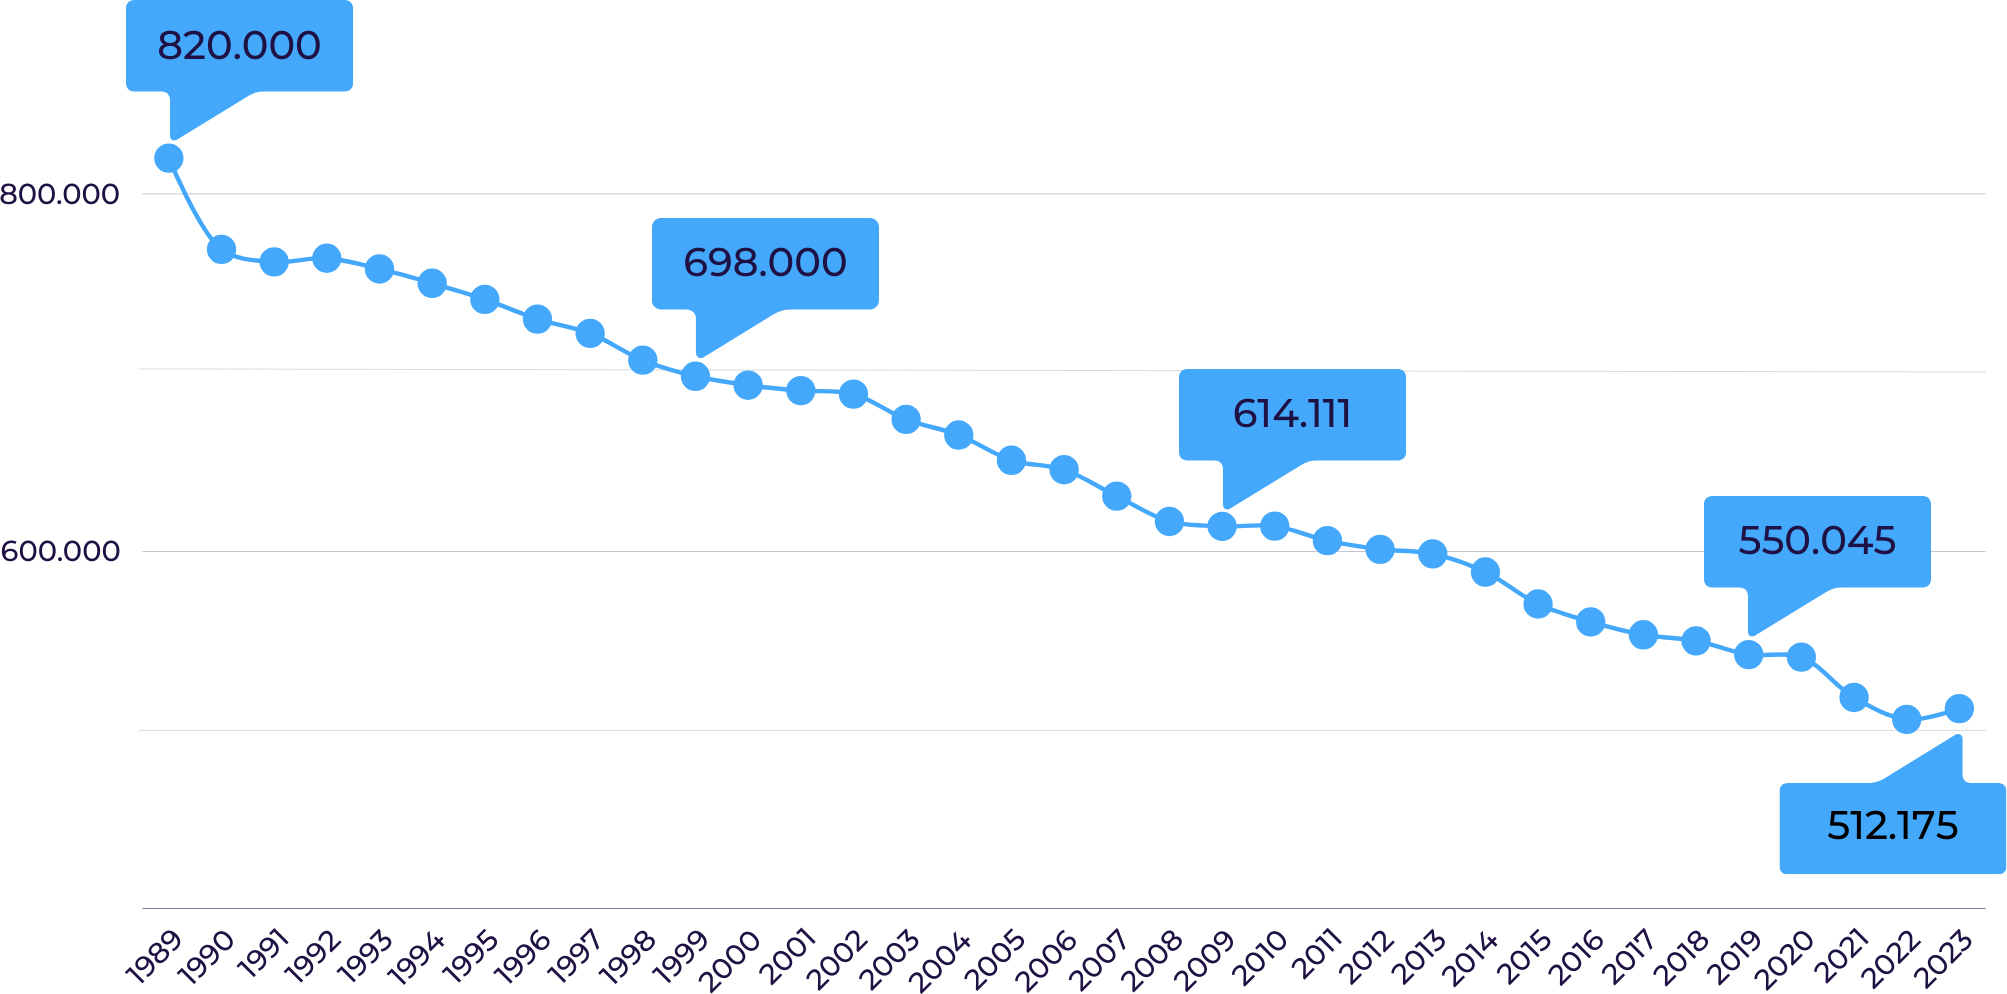 Liniengrafik: Entwcklung der Mitglieder des DTTB von 1989 bis 2023